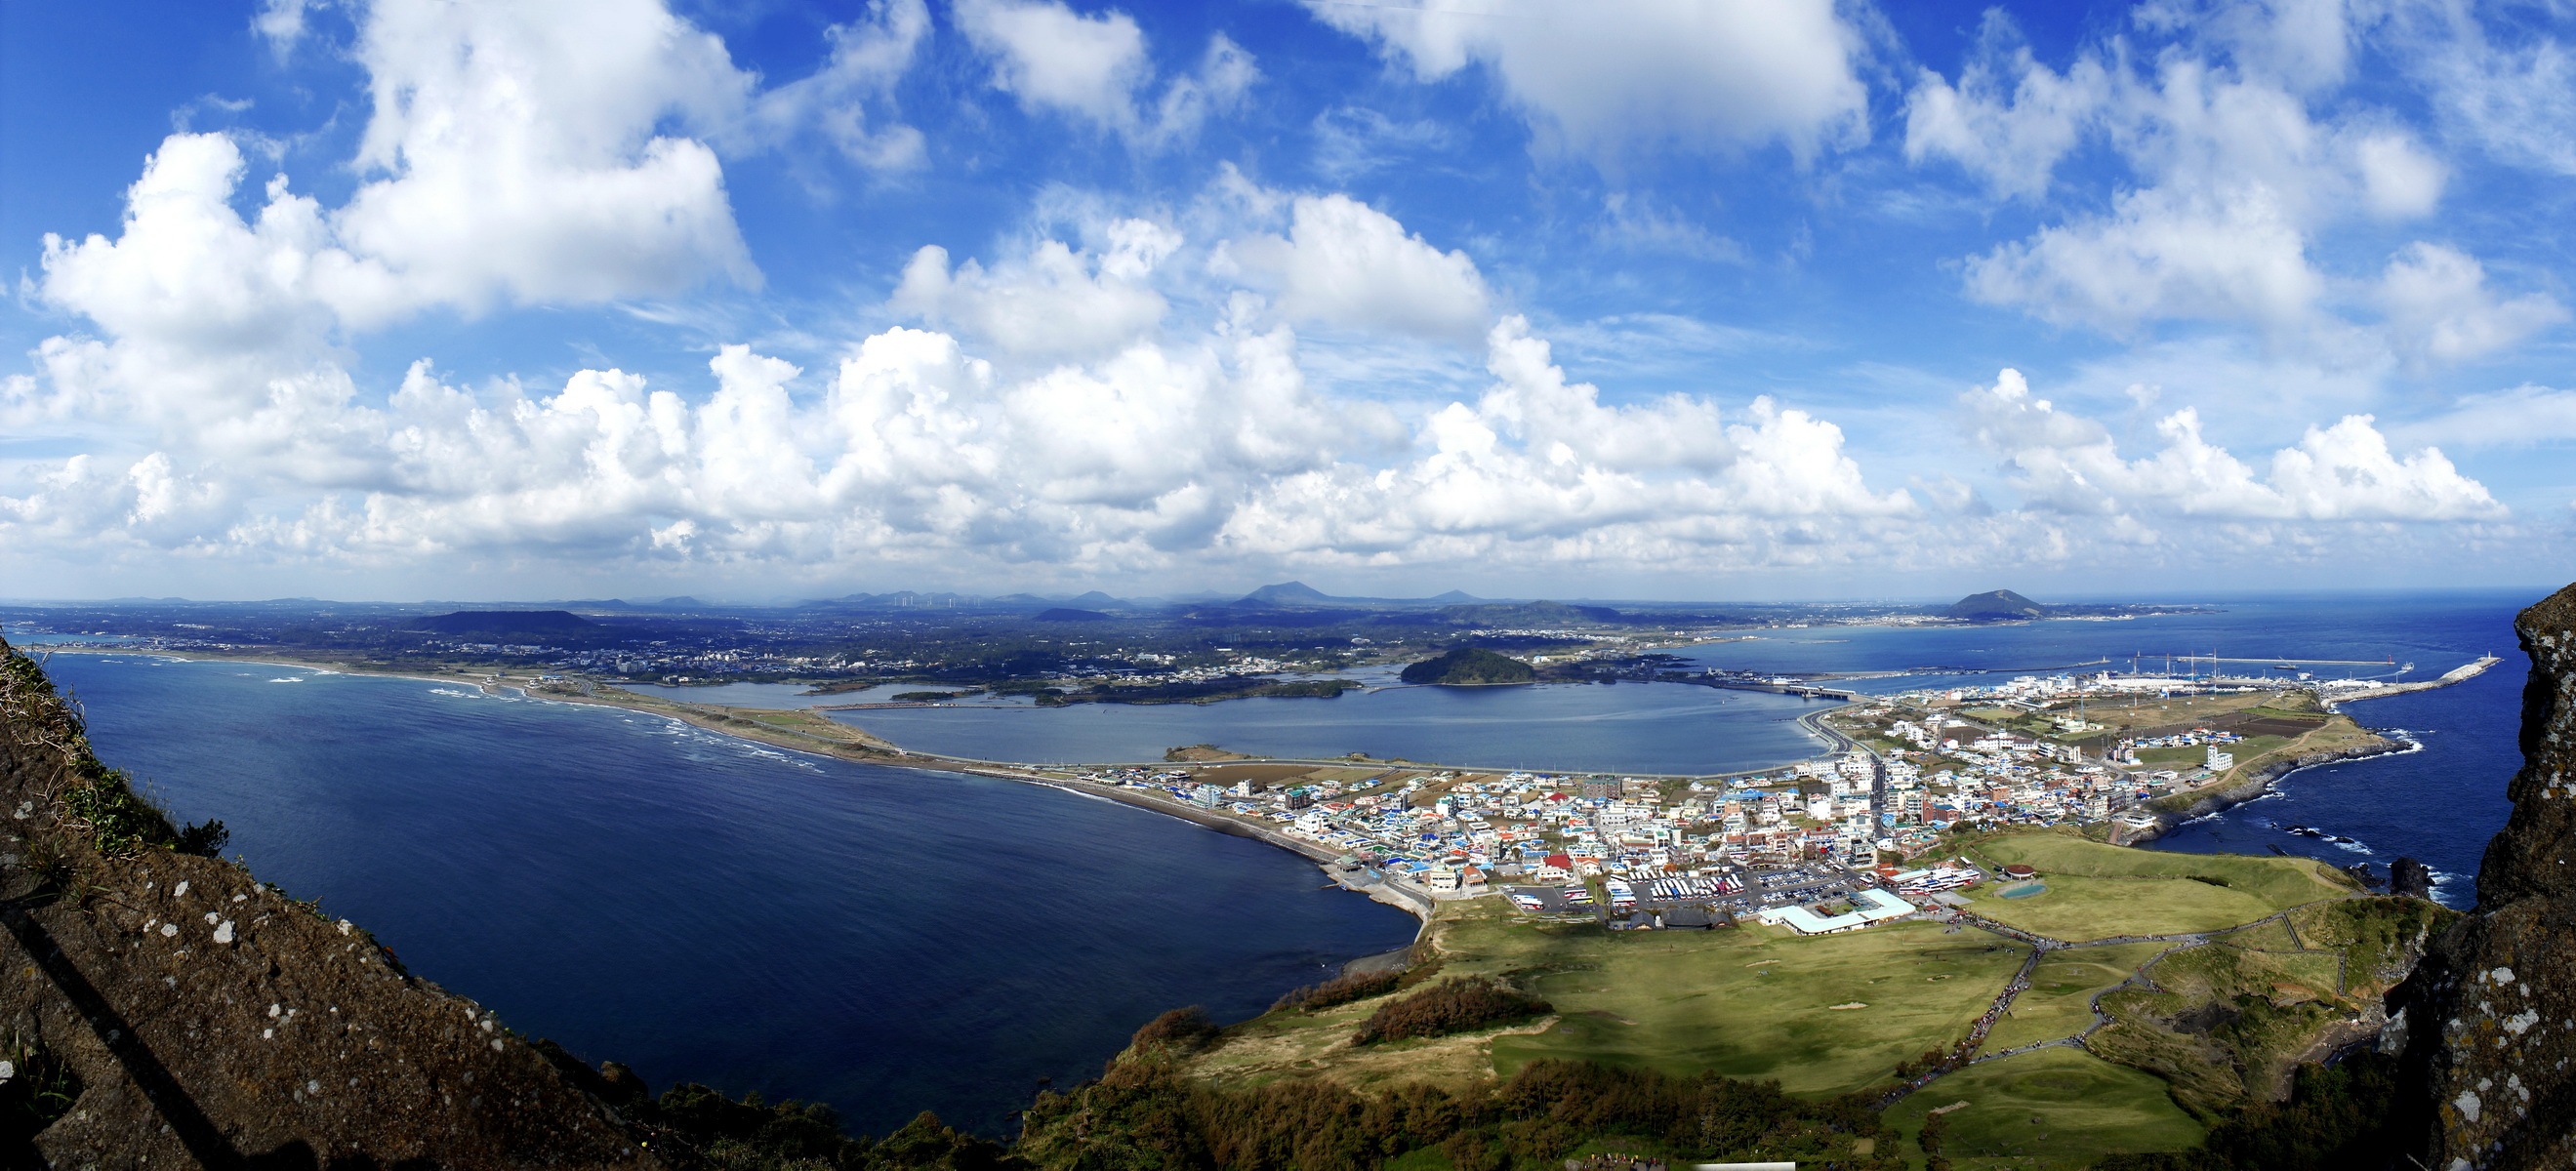 济州岛——《大长今》的拍摄地果然不是一般的美